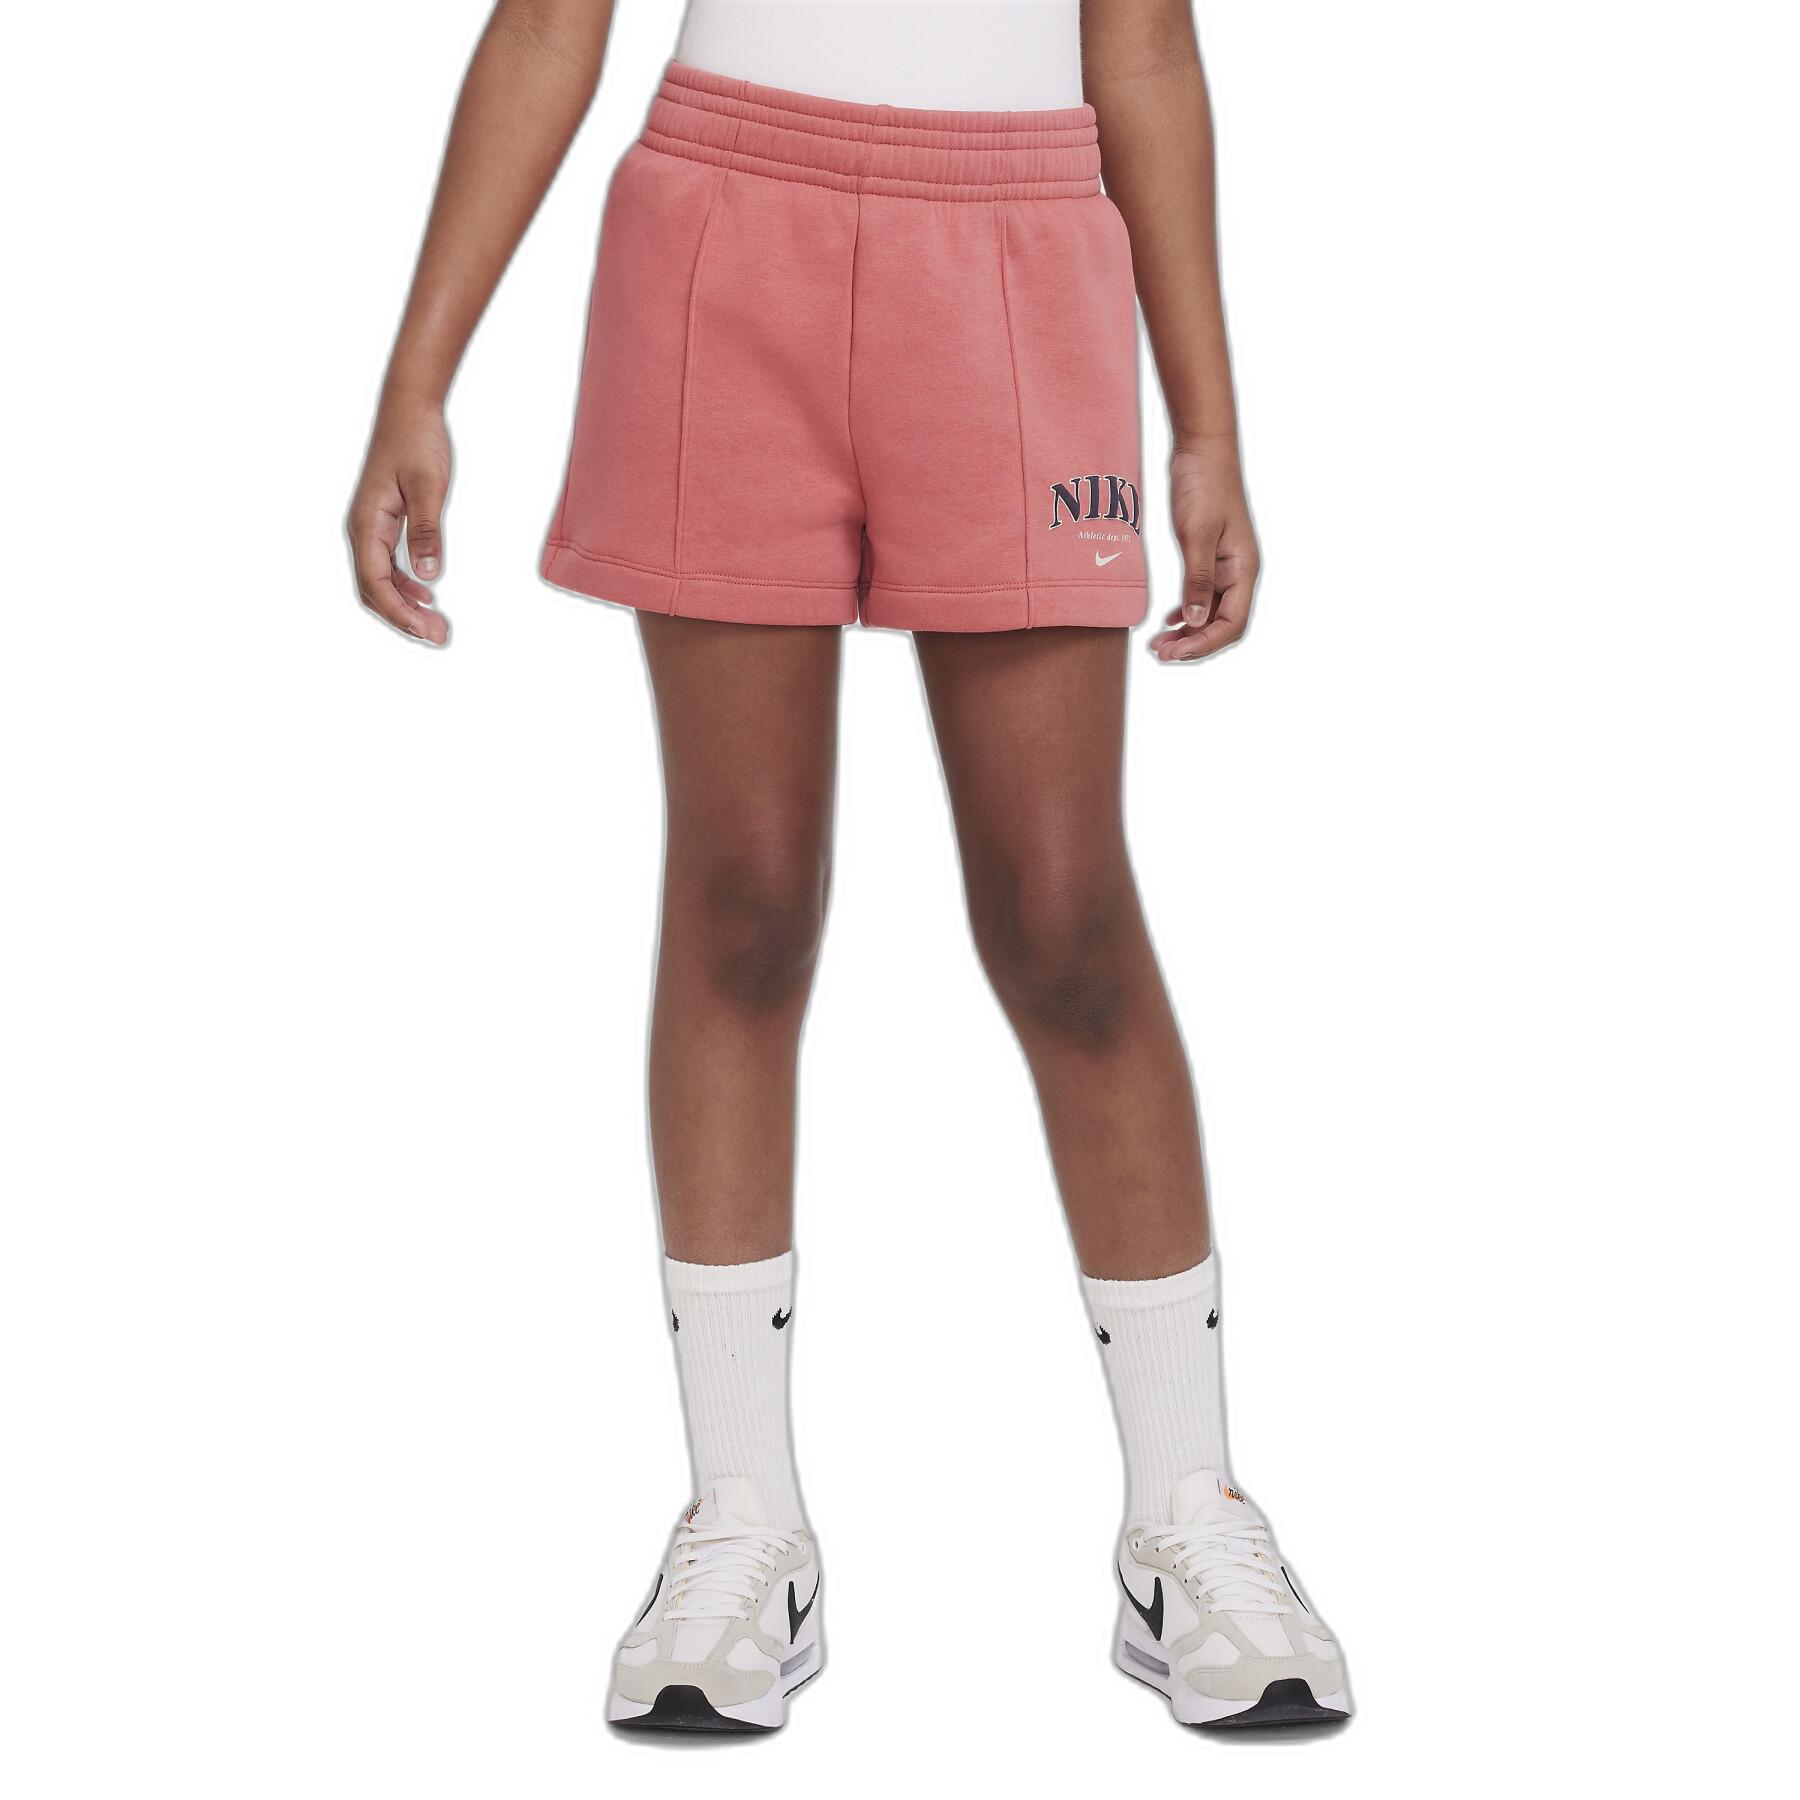 Meisjes shorts Nike Trend